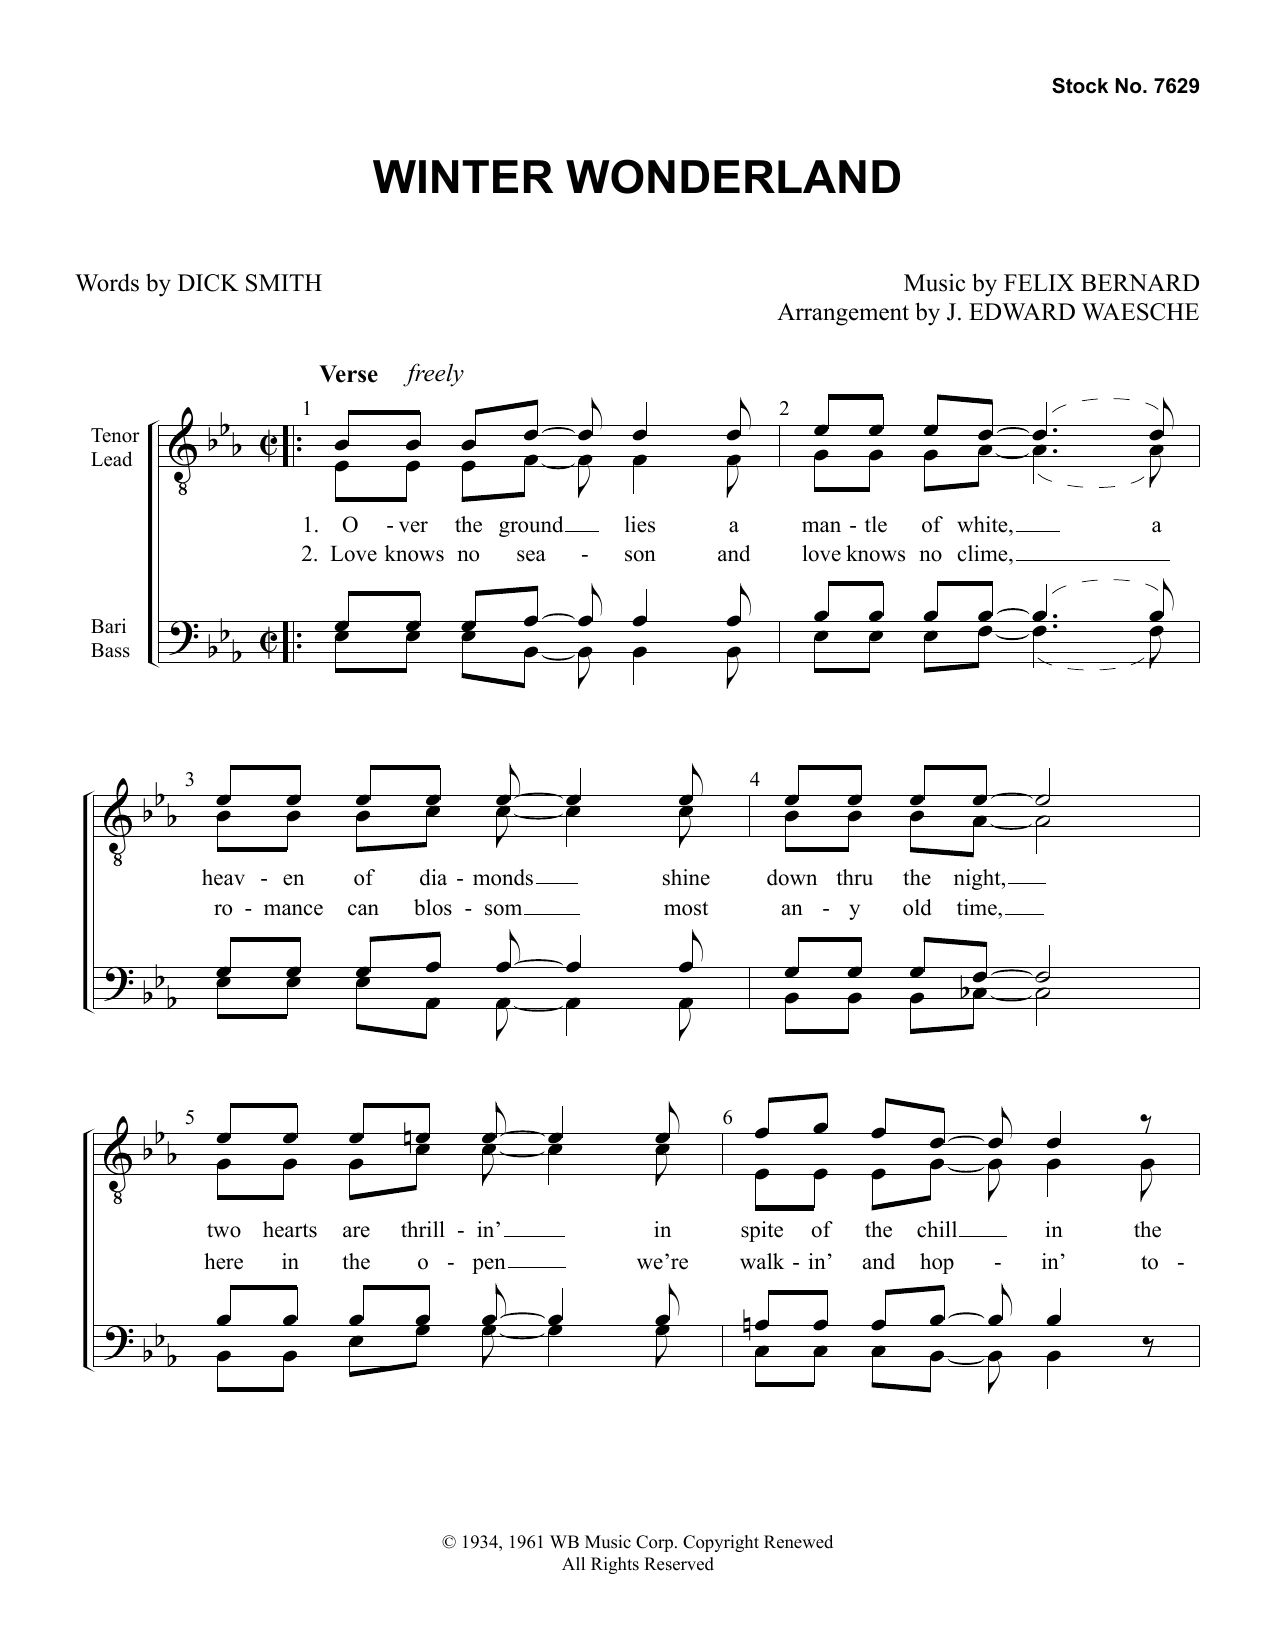 Dick Smith & Felix Bernard Winter Wonderland (arr. Ed Waesche) sheet music notes and chords arranged for SSAA Choir